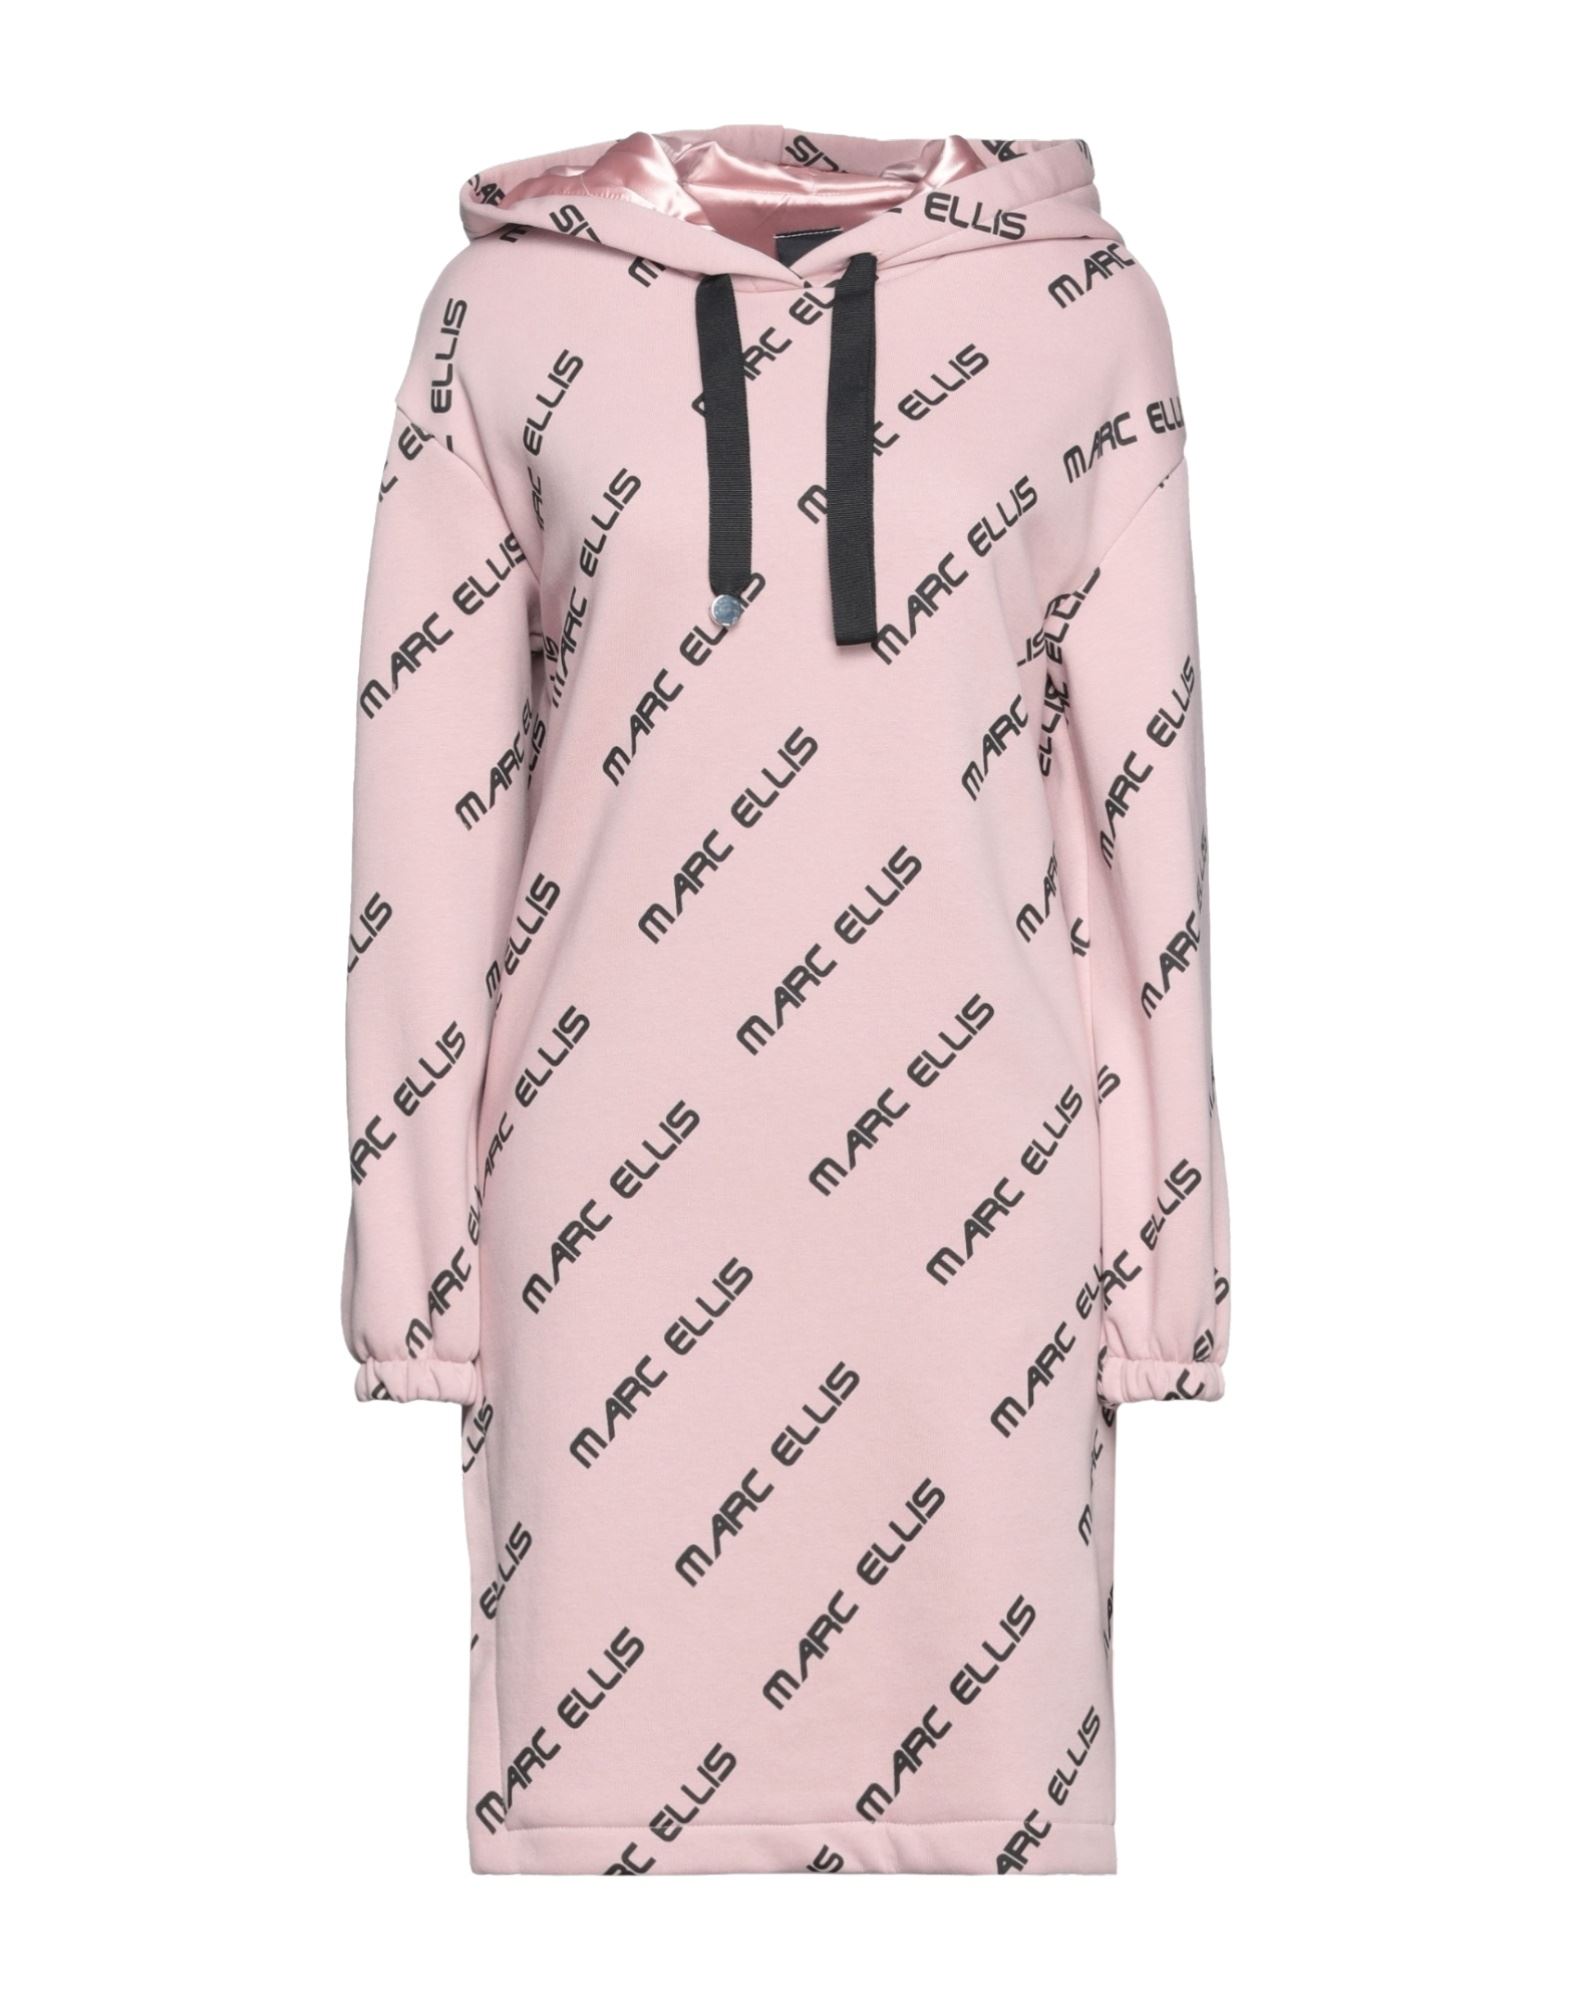 Shop Marc Ellis Woman Mini Dress Pastel Pink Size 4 Cotton, Polyester